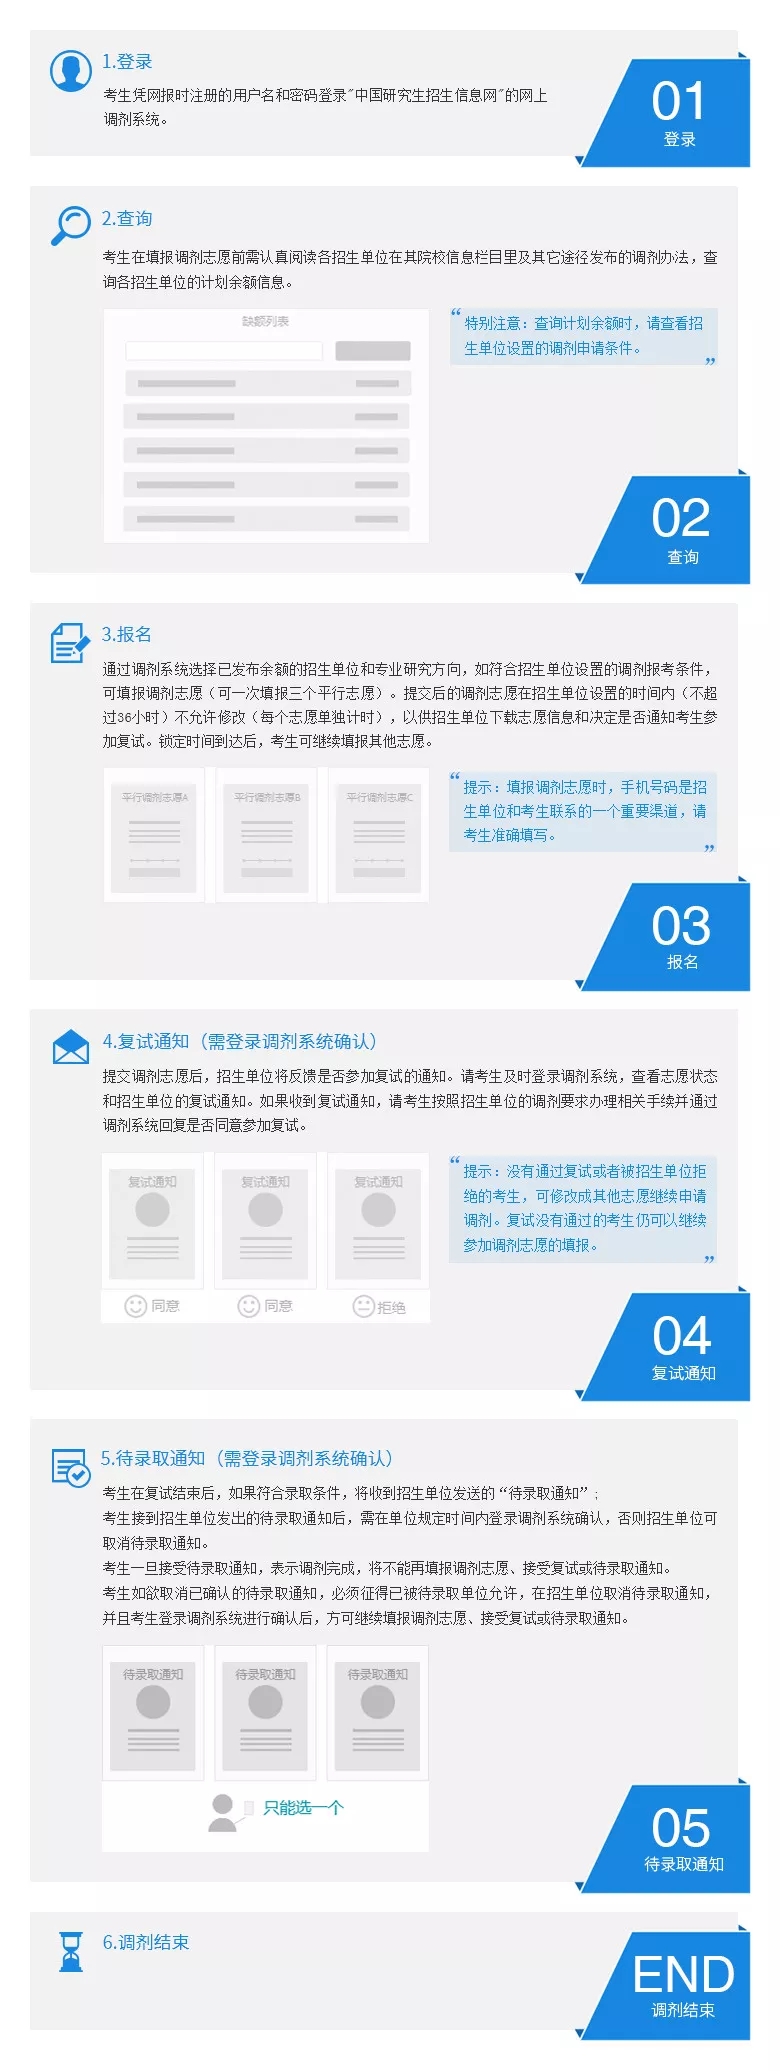 2019年全国硕士研究生招生网上调剂流程图.webp.jpg